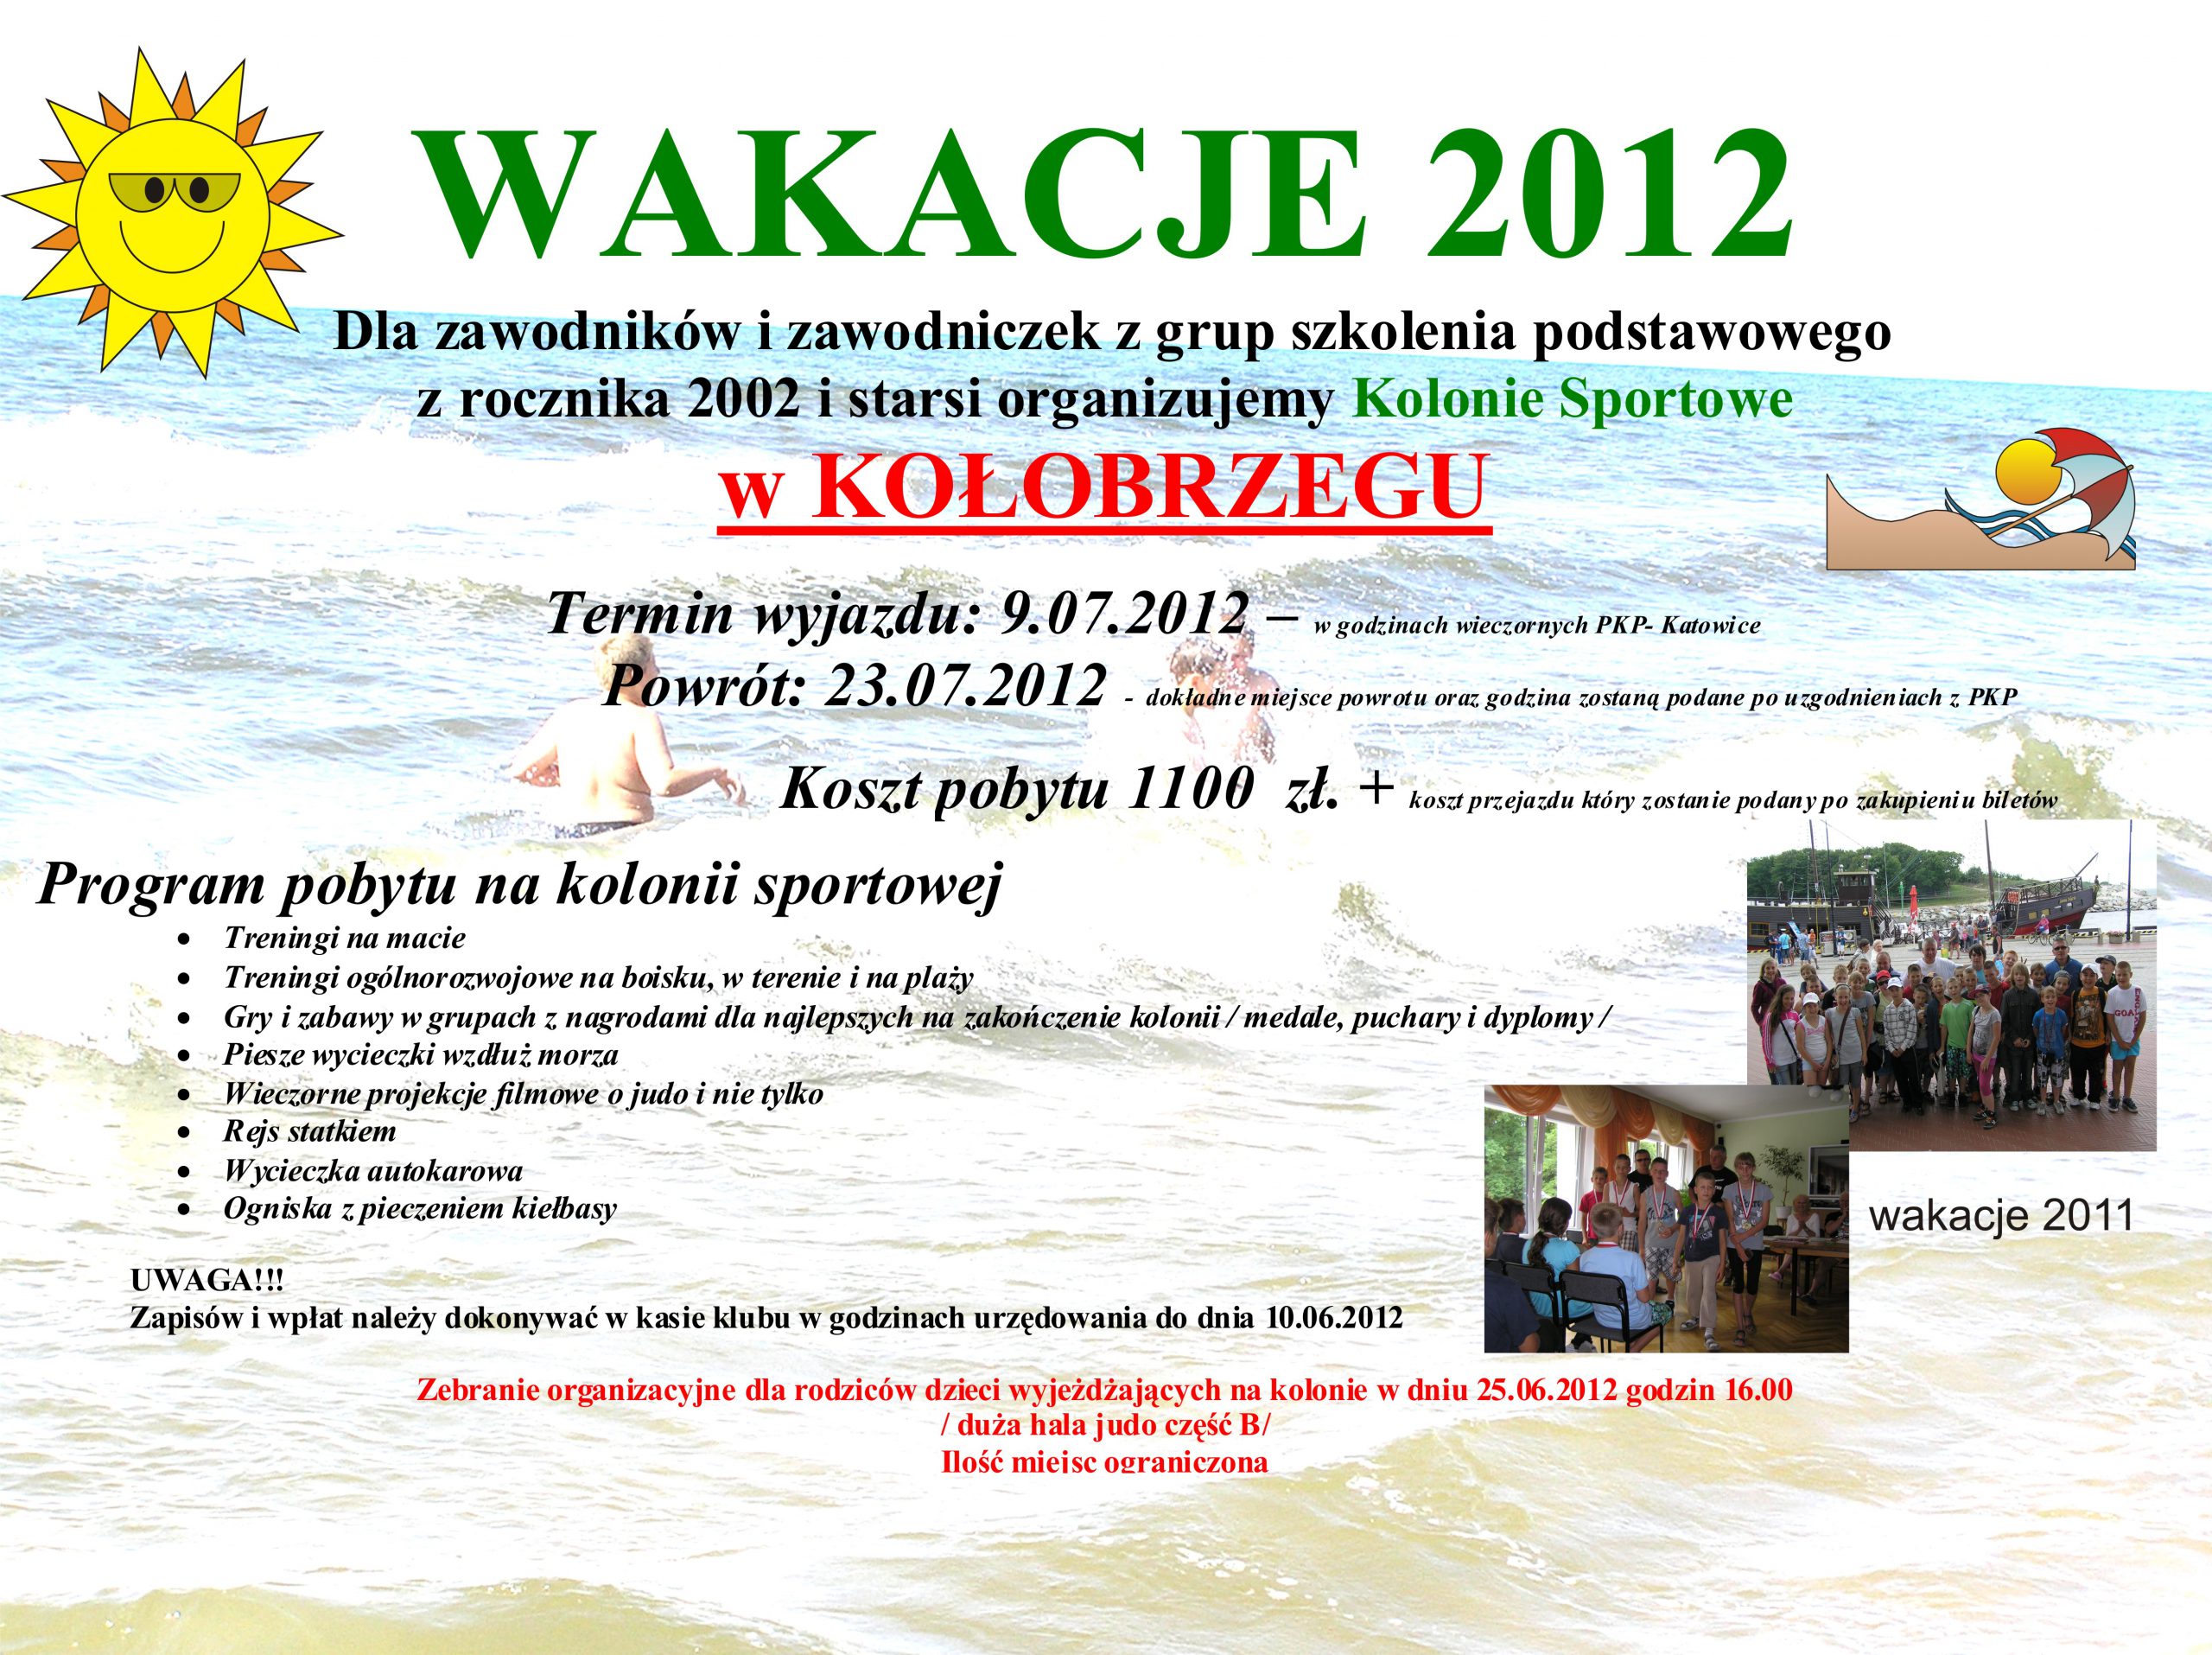 wakacje-2012-kolobrzeg-plakat